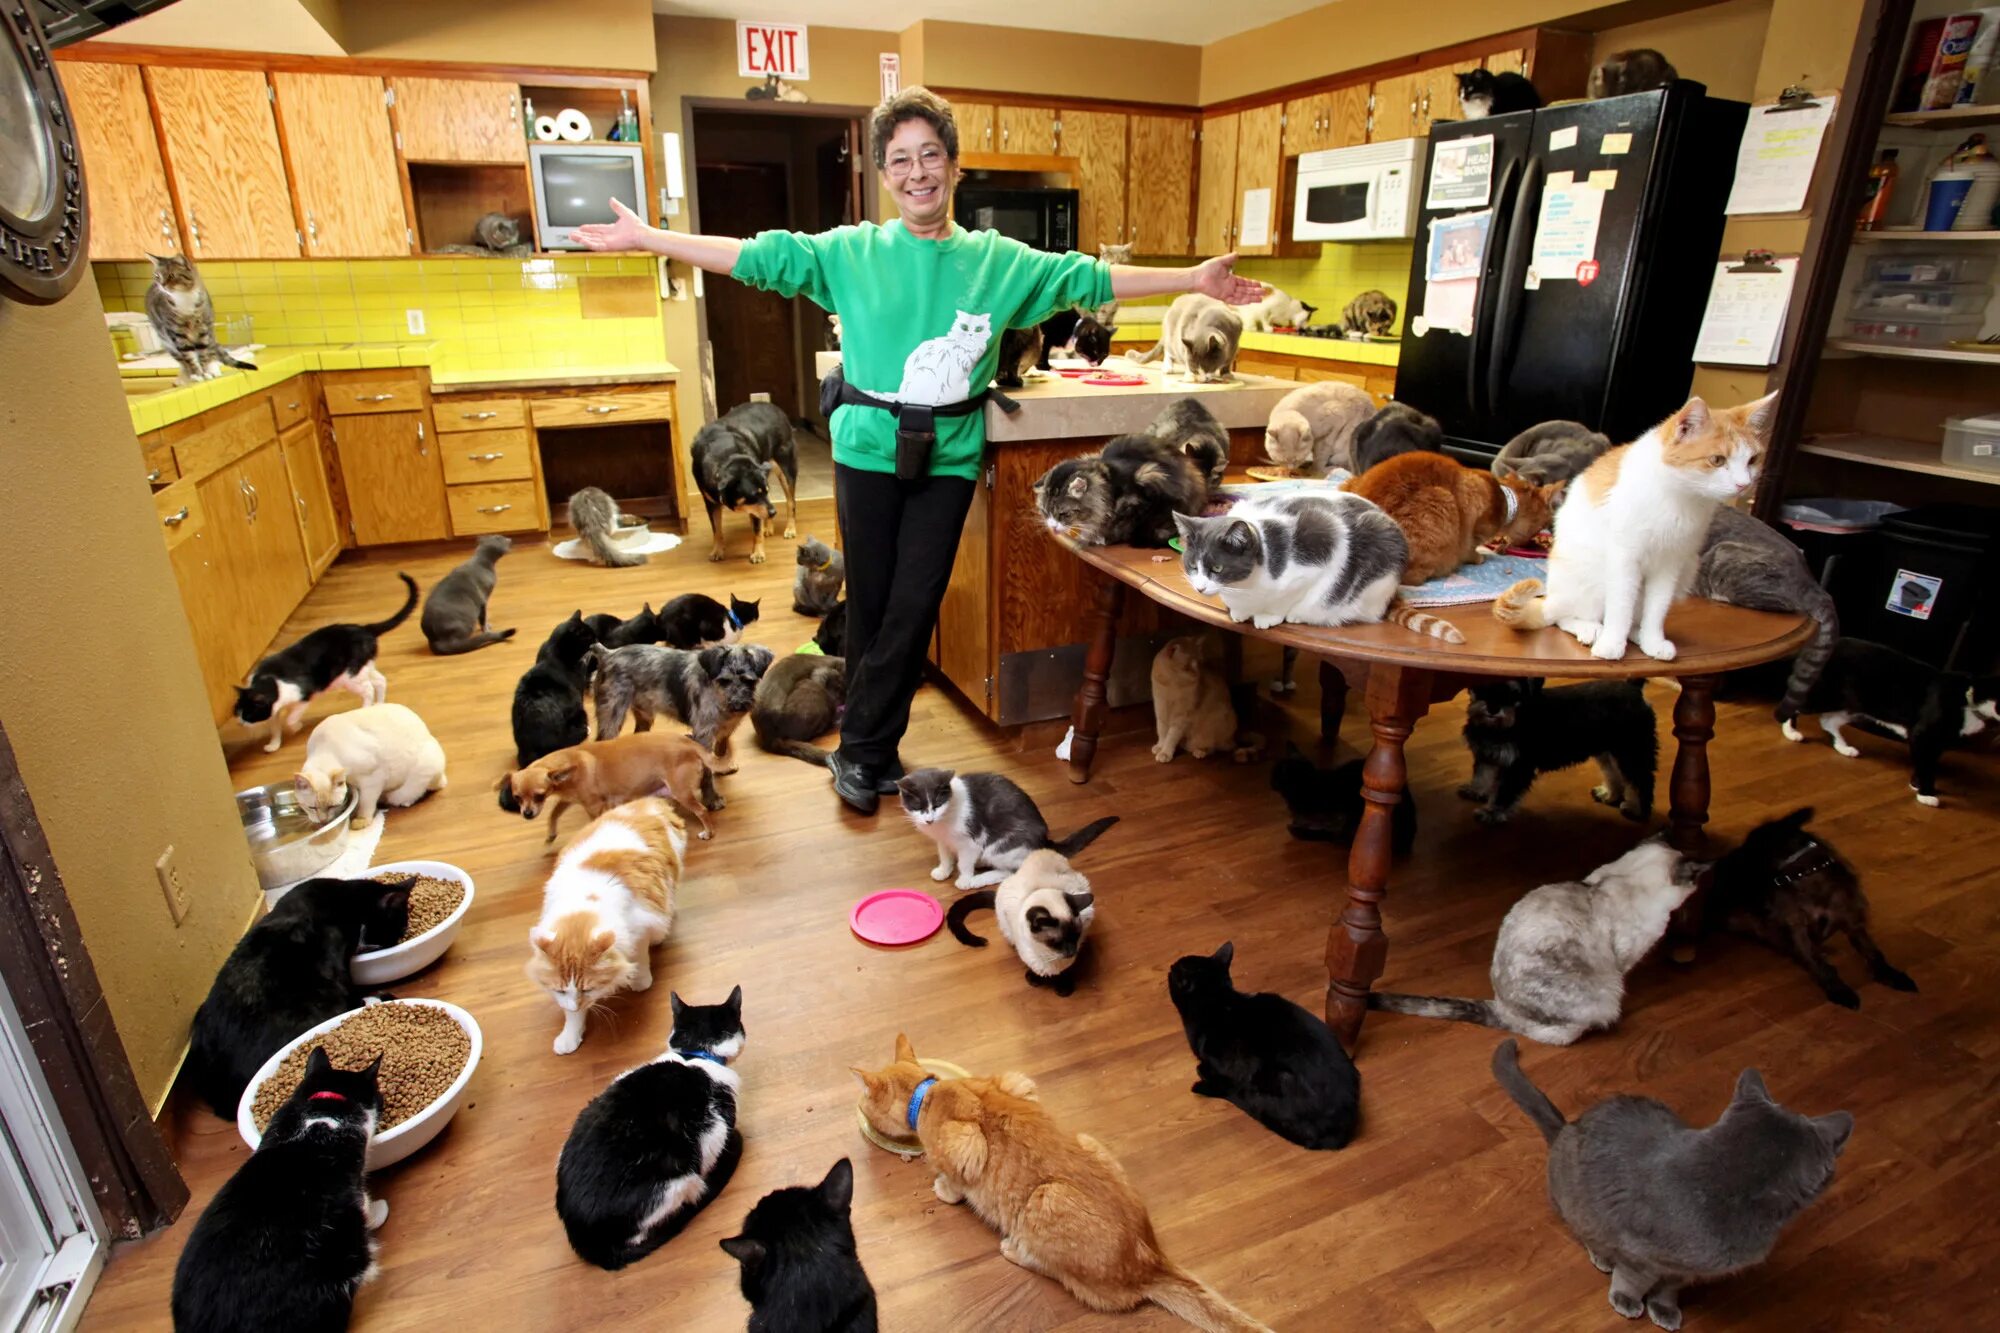 Русское живое домашнее. Домашние животные в доме. Куча кошек в квартире. Домашиеживотные в квартире. Много животных в квартире.